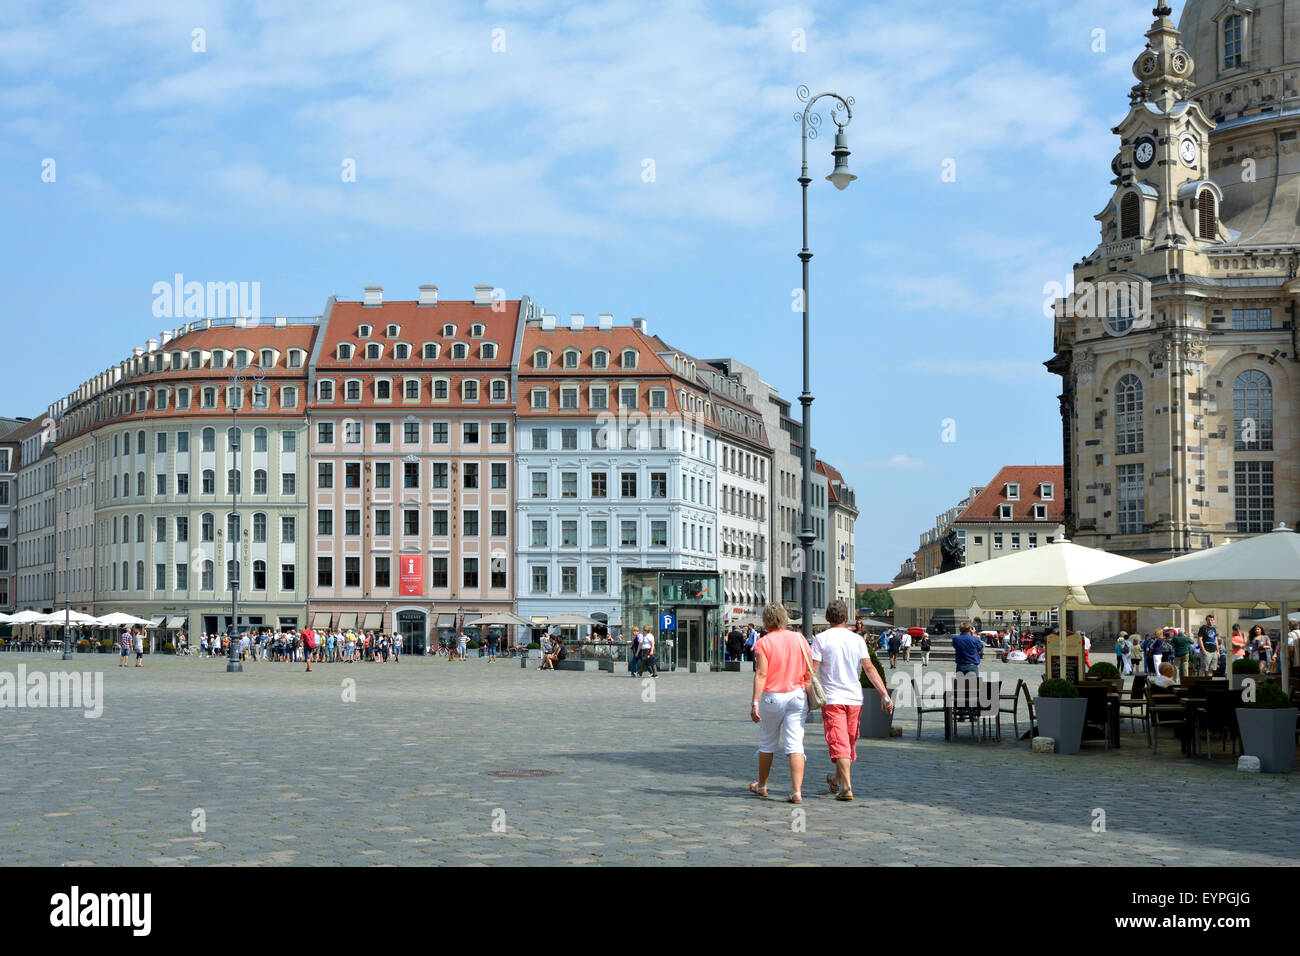 Turisti sul Nuovo Mercato n Dresden prima le case a schiera. Foto Stock